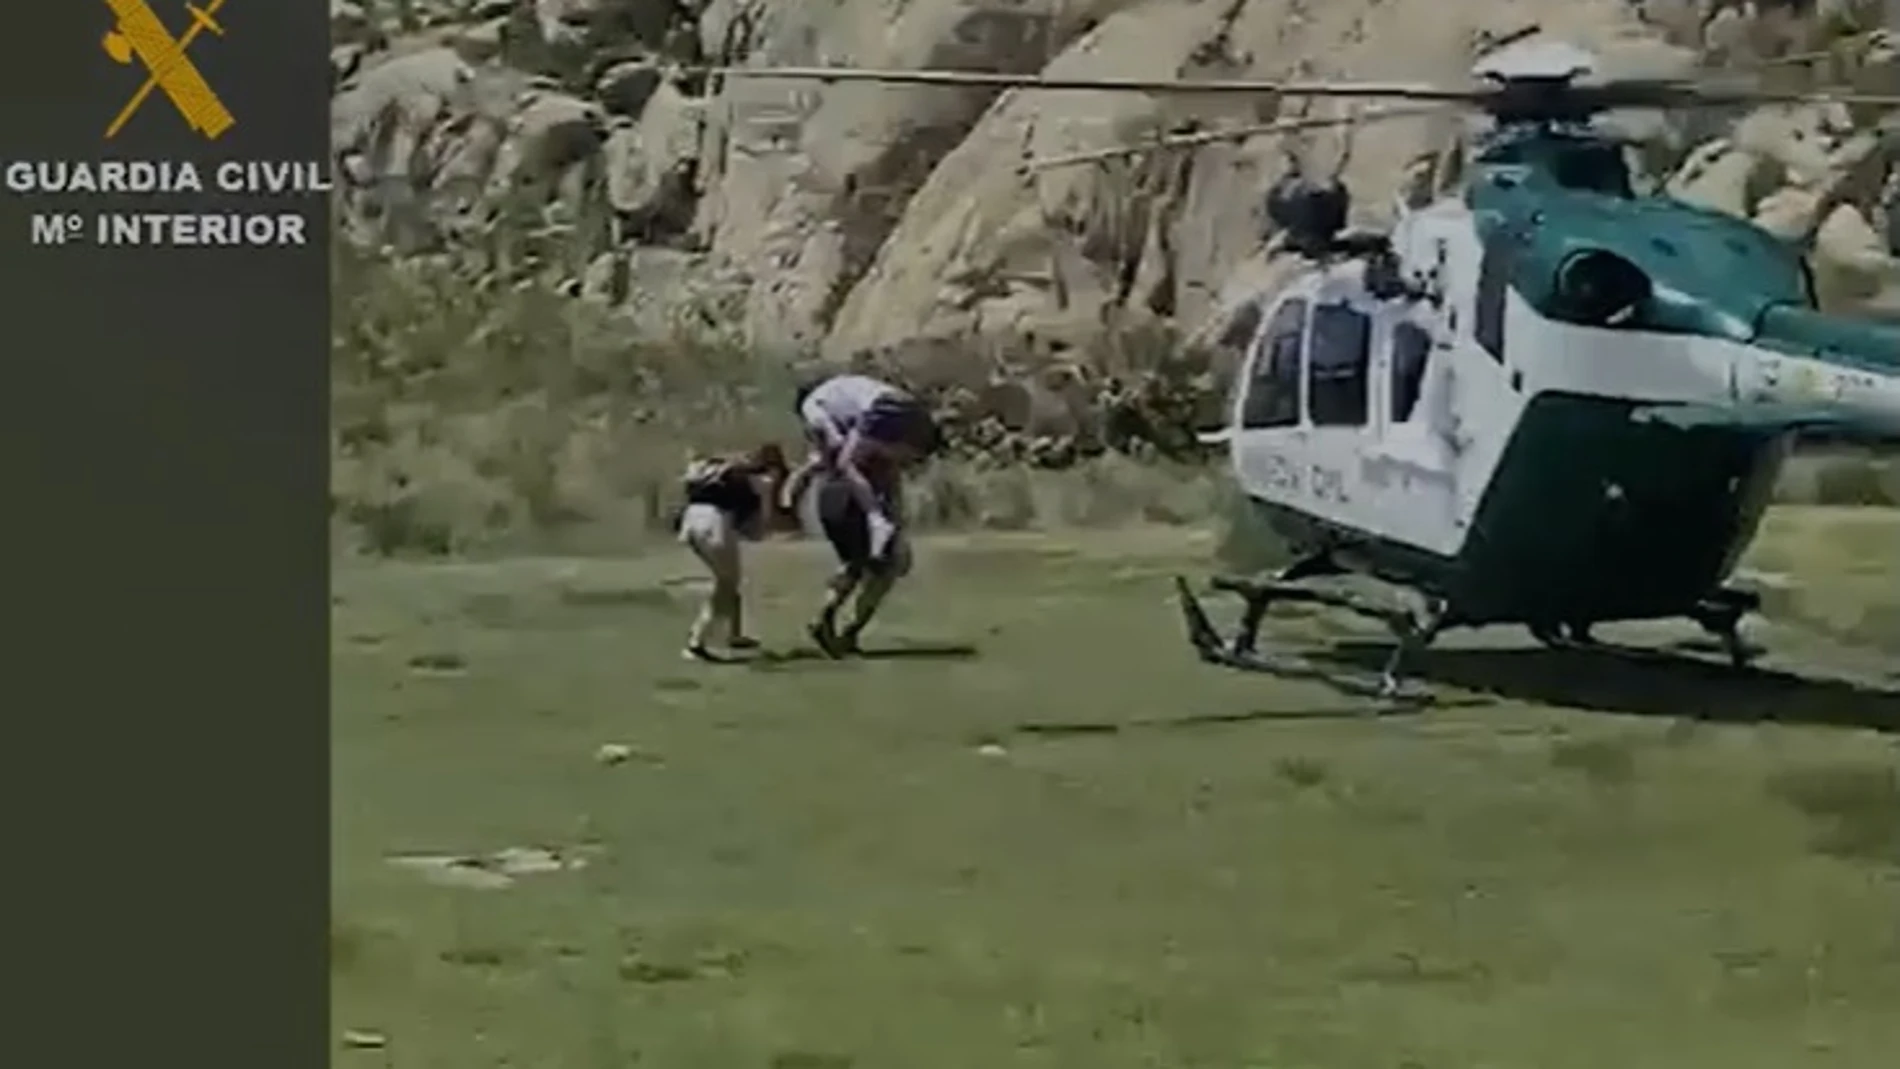 La Guardia Civil rescata en helicóptero a un chico tras lesionarse en el tobillo en La Pedriza (Madrid)